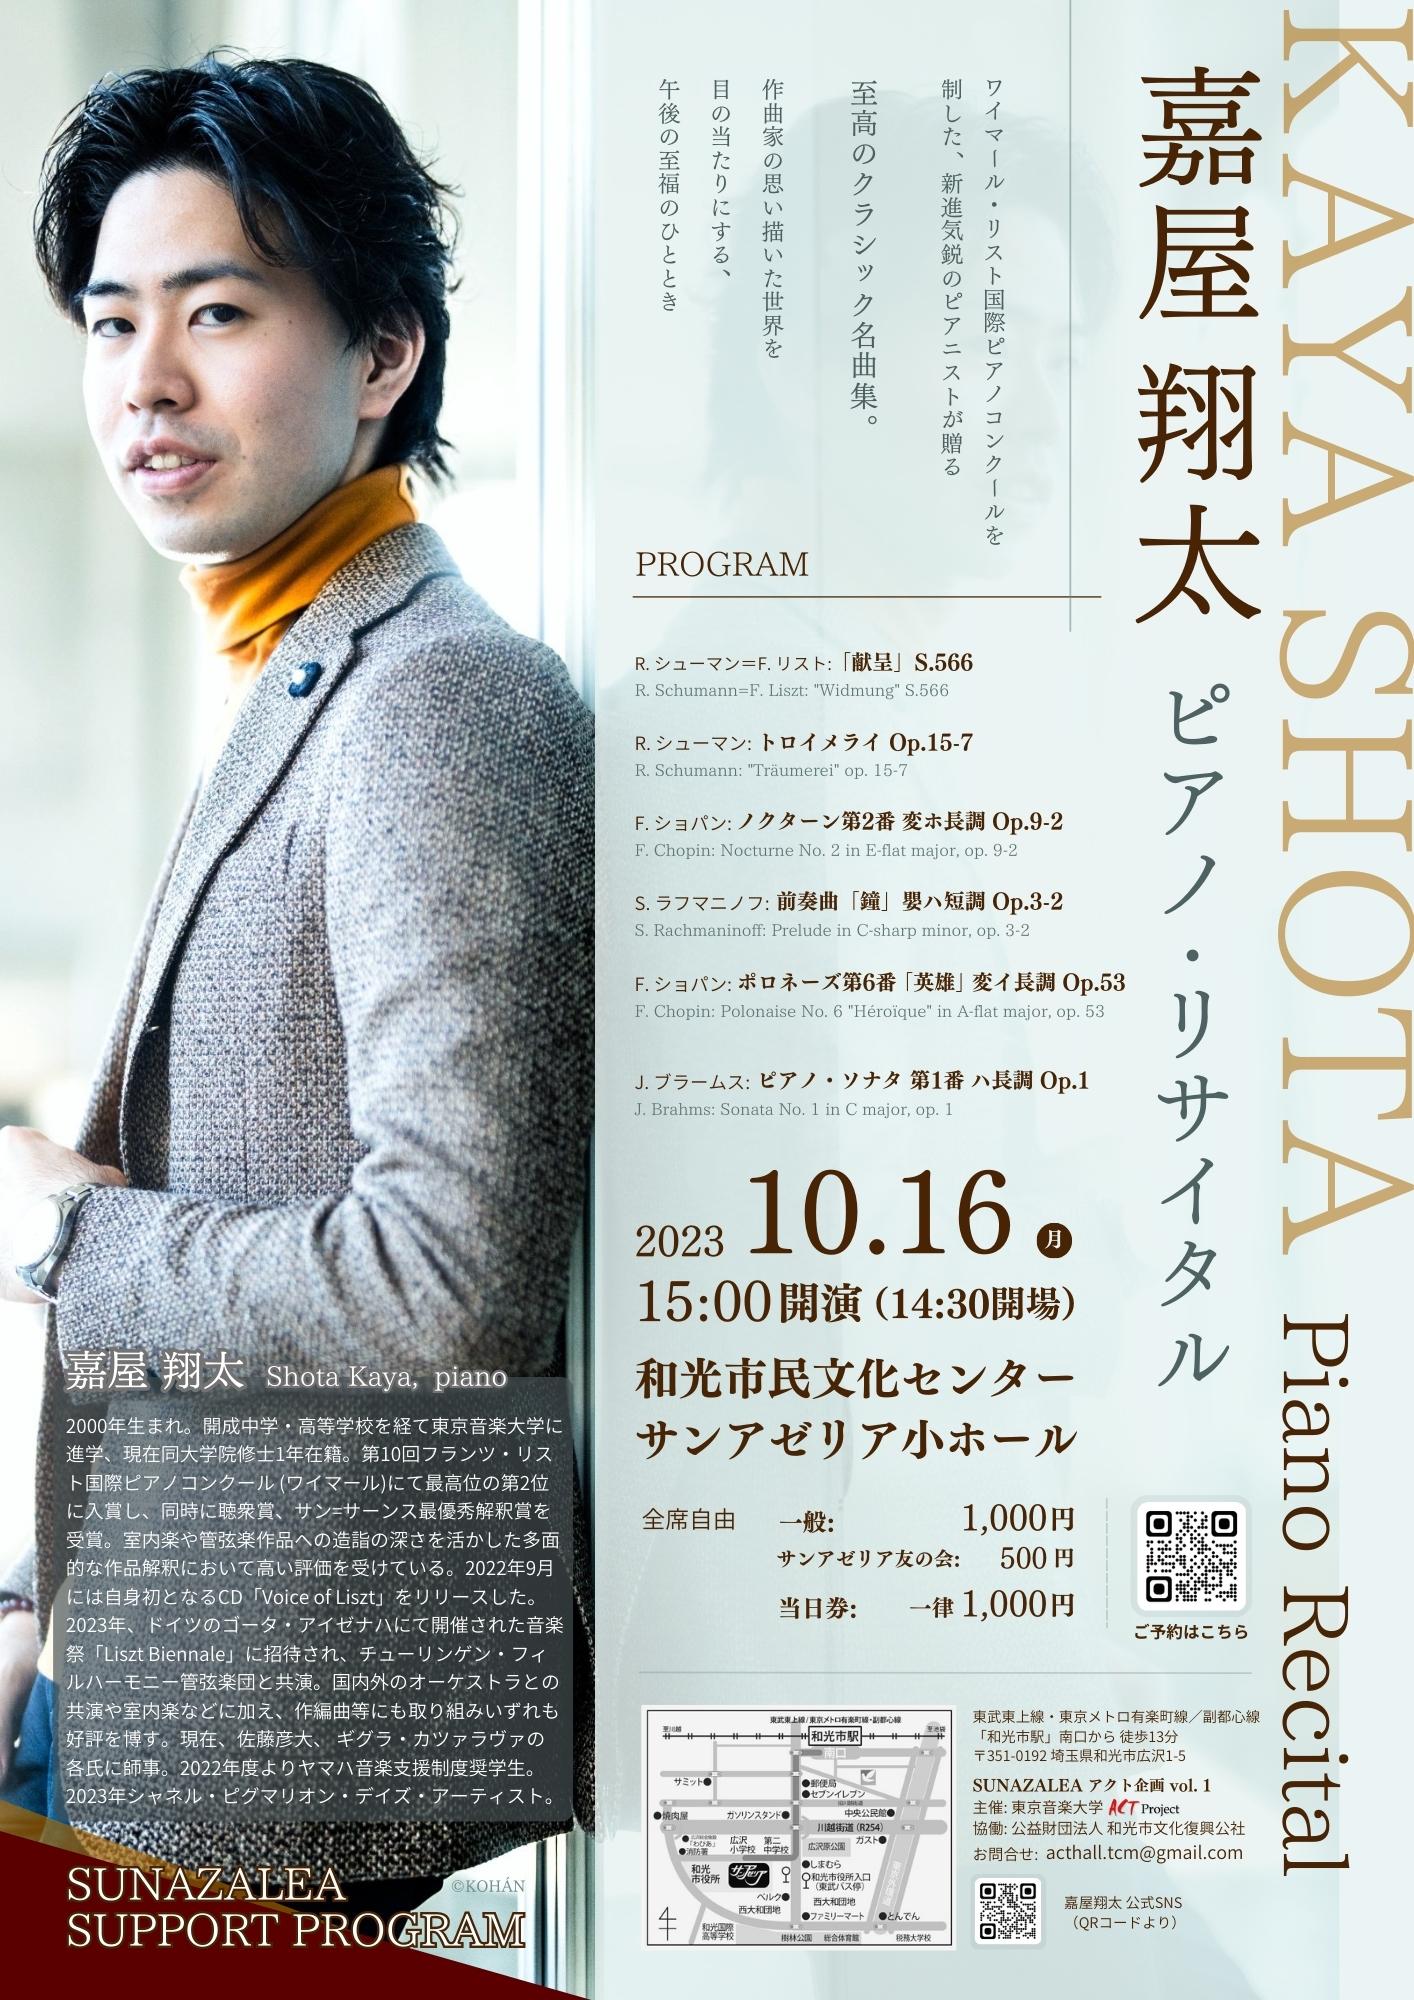 【ACTプロジェクト企画】嘉屋翔太 ピアノ・リサイタル　SUNAZALEAアクト企画vol. 1